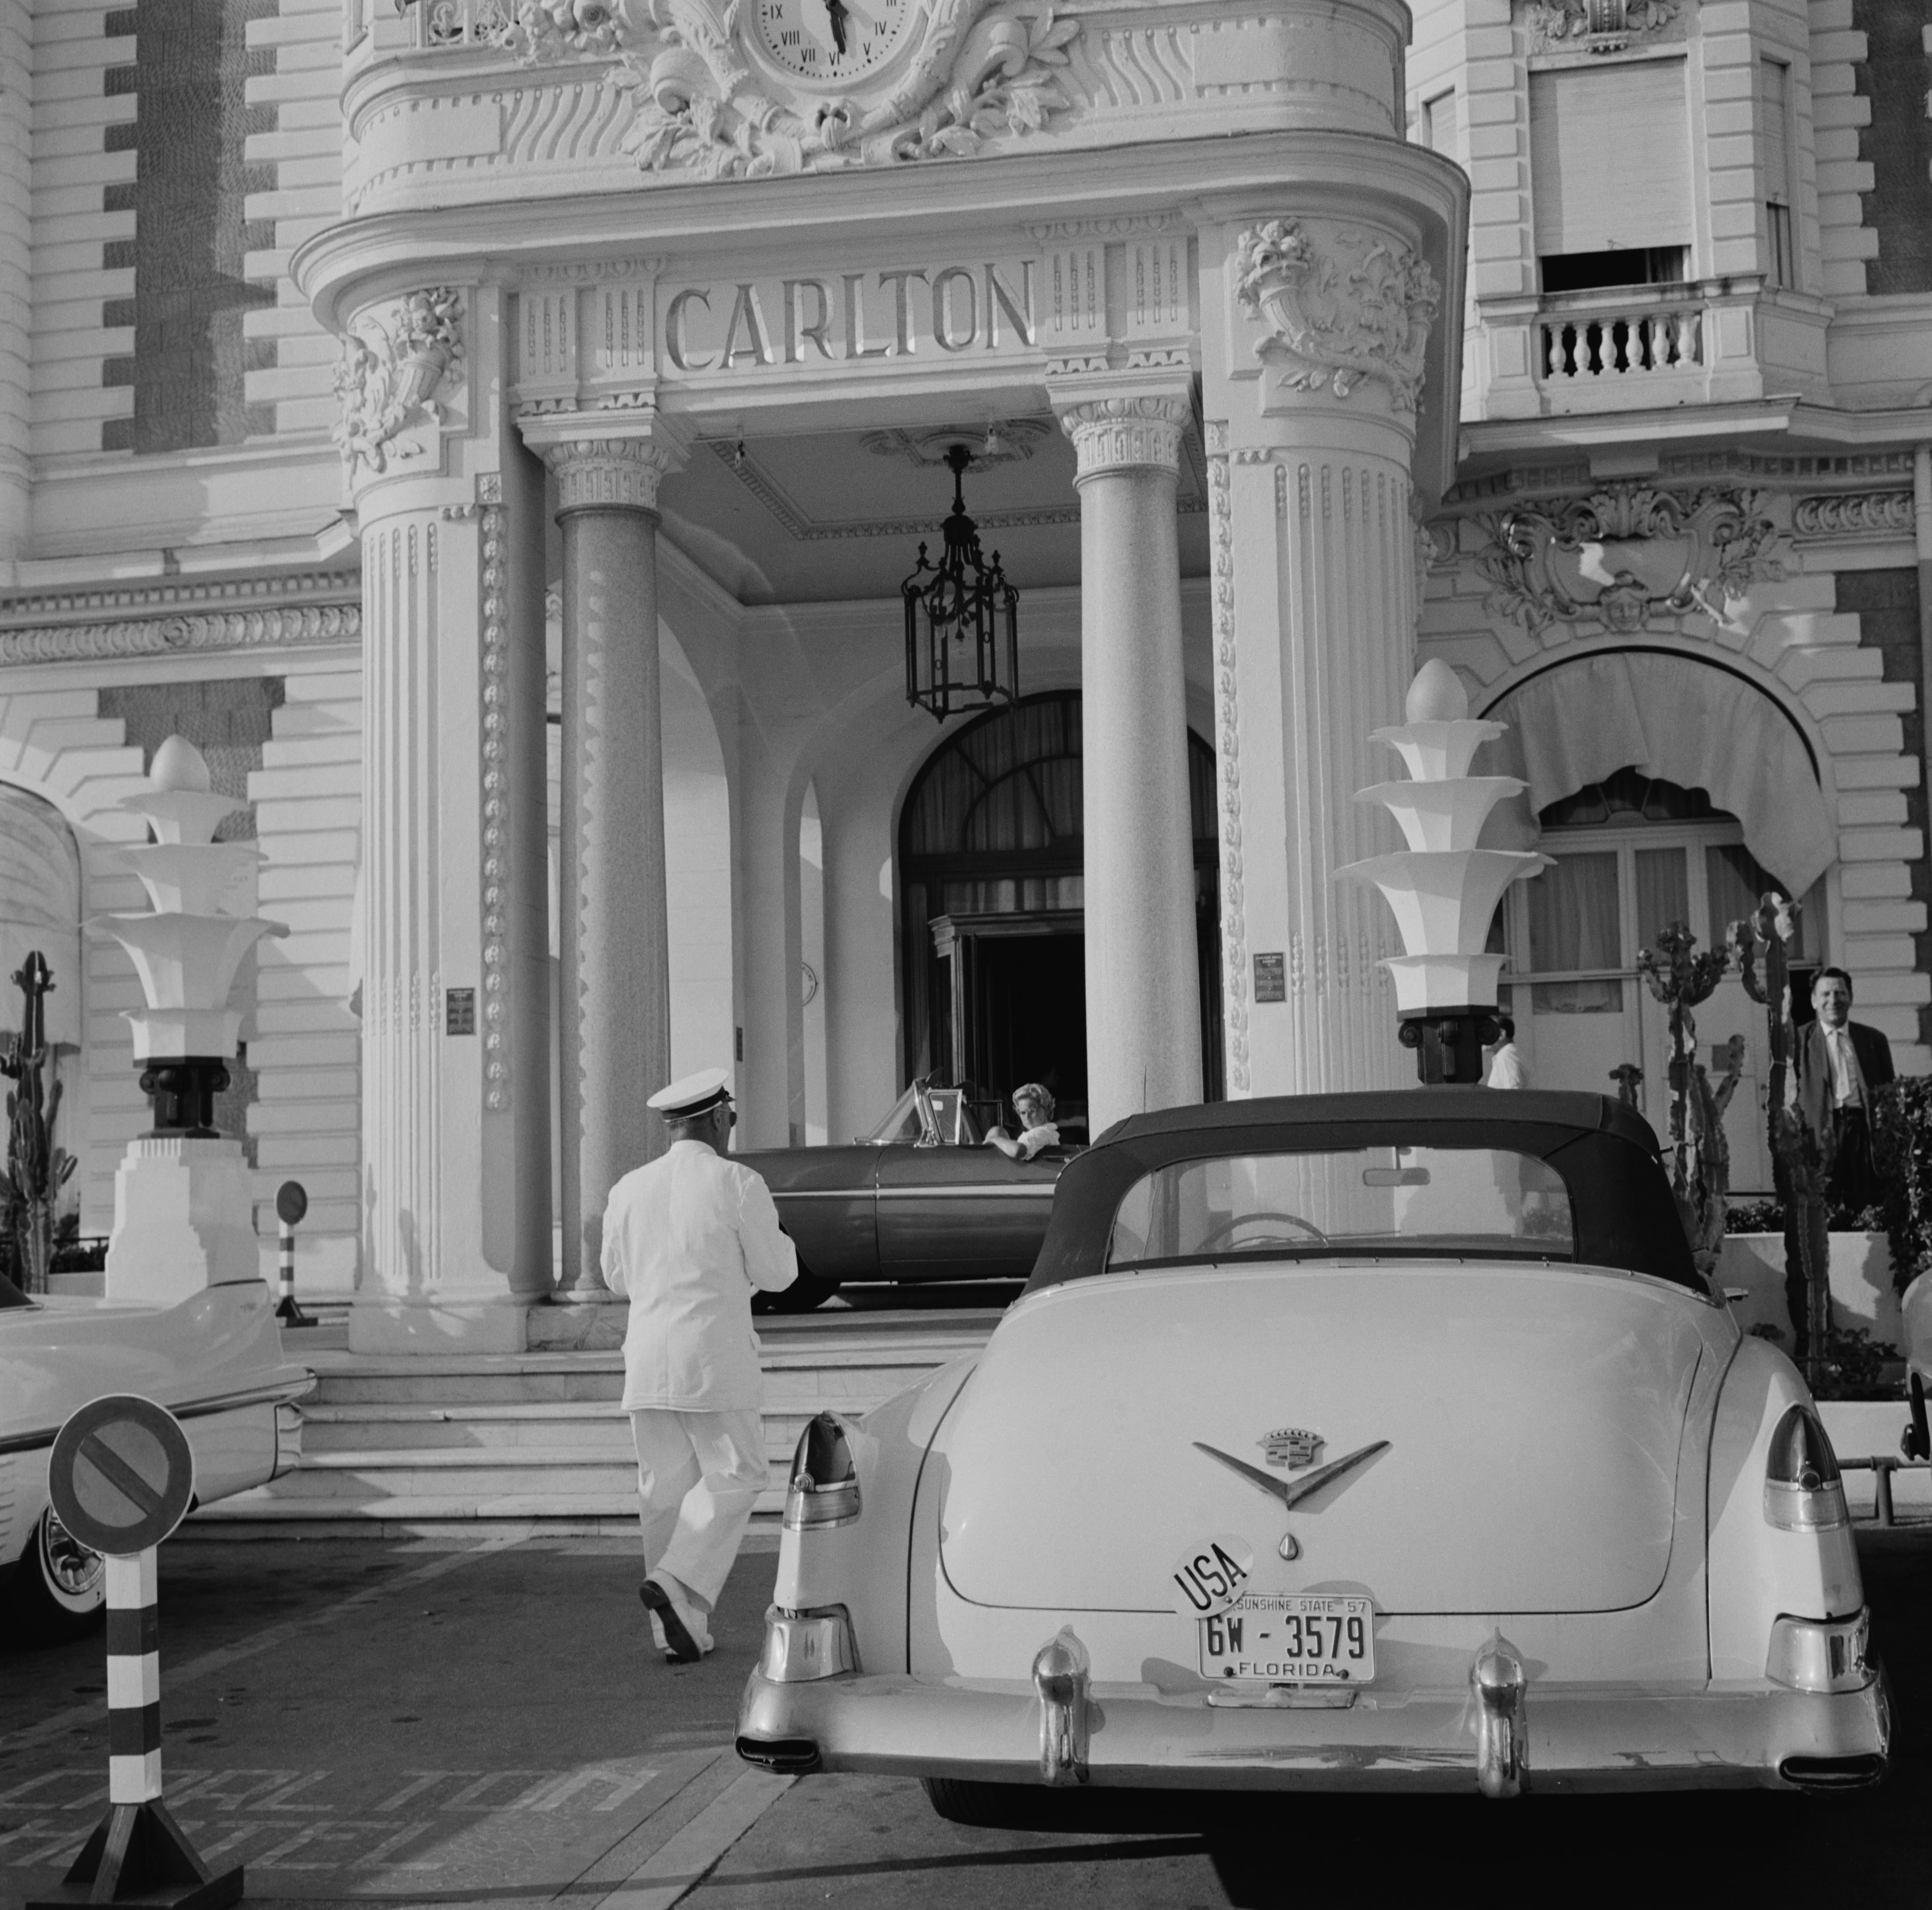 Das Carlton Hotel" 1955 Slim Aarons Limited Estate Edition
Ein Cadillac mit Florida-Kennzeichen, geparkt vor dem Carlton Hotel, Cannes, Frankreich, um 1955. 

Schlanker Aarons-Silbergelatine-Druck auf Faserbasis 
Später gedruckt 
Slim Aarons Estate